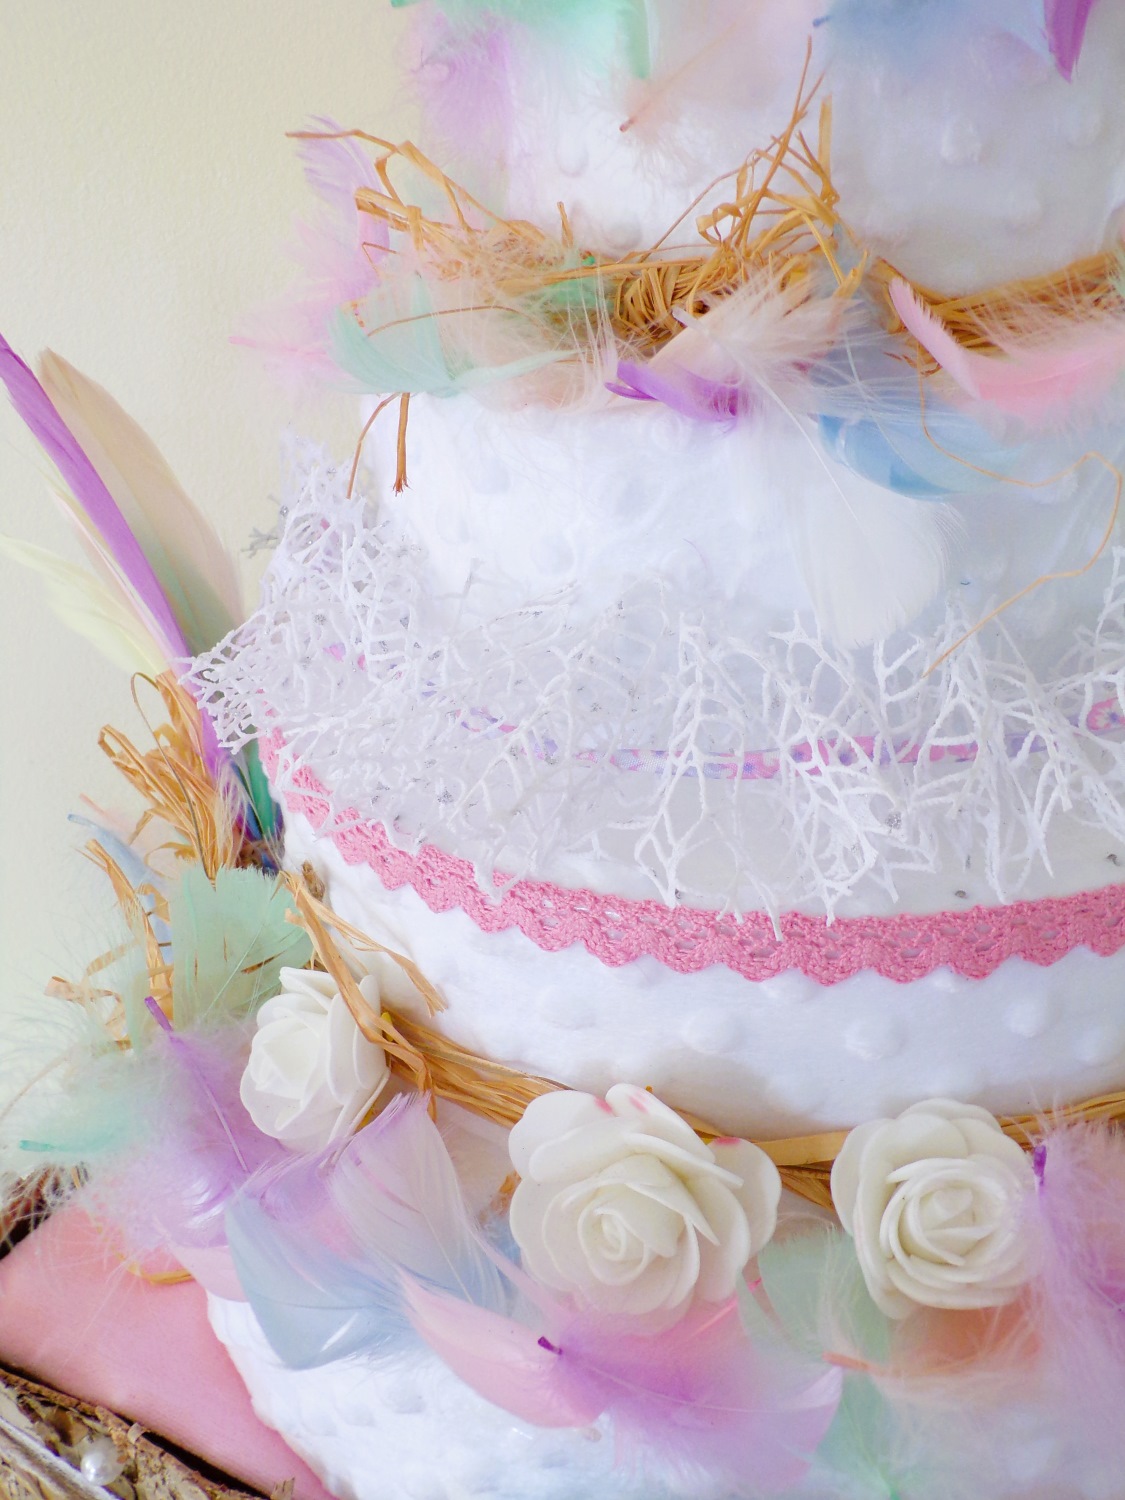 wedding cake deco dreamcatcher anniversaire baby shower